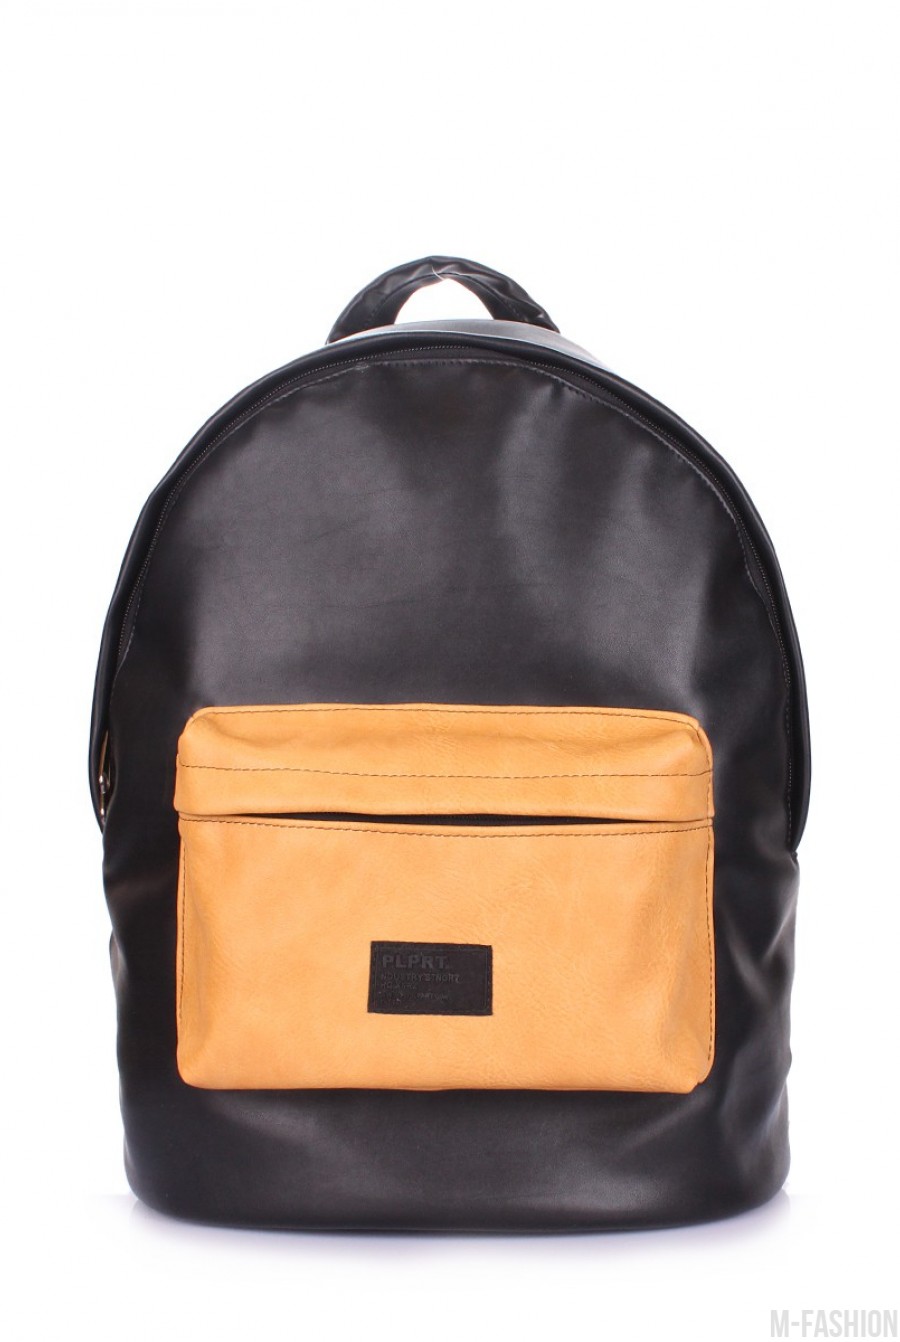 Черный кожаный рюкзак с оригинальным желтым накладным карманом - Фото 1